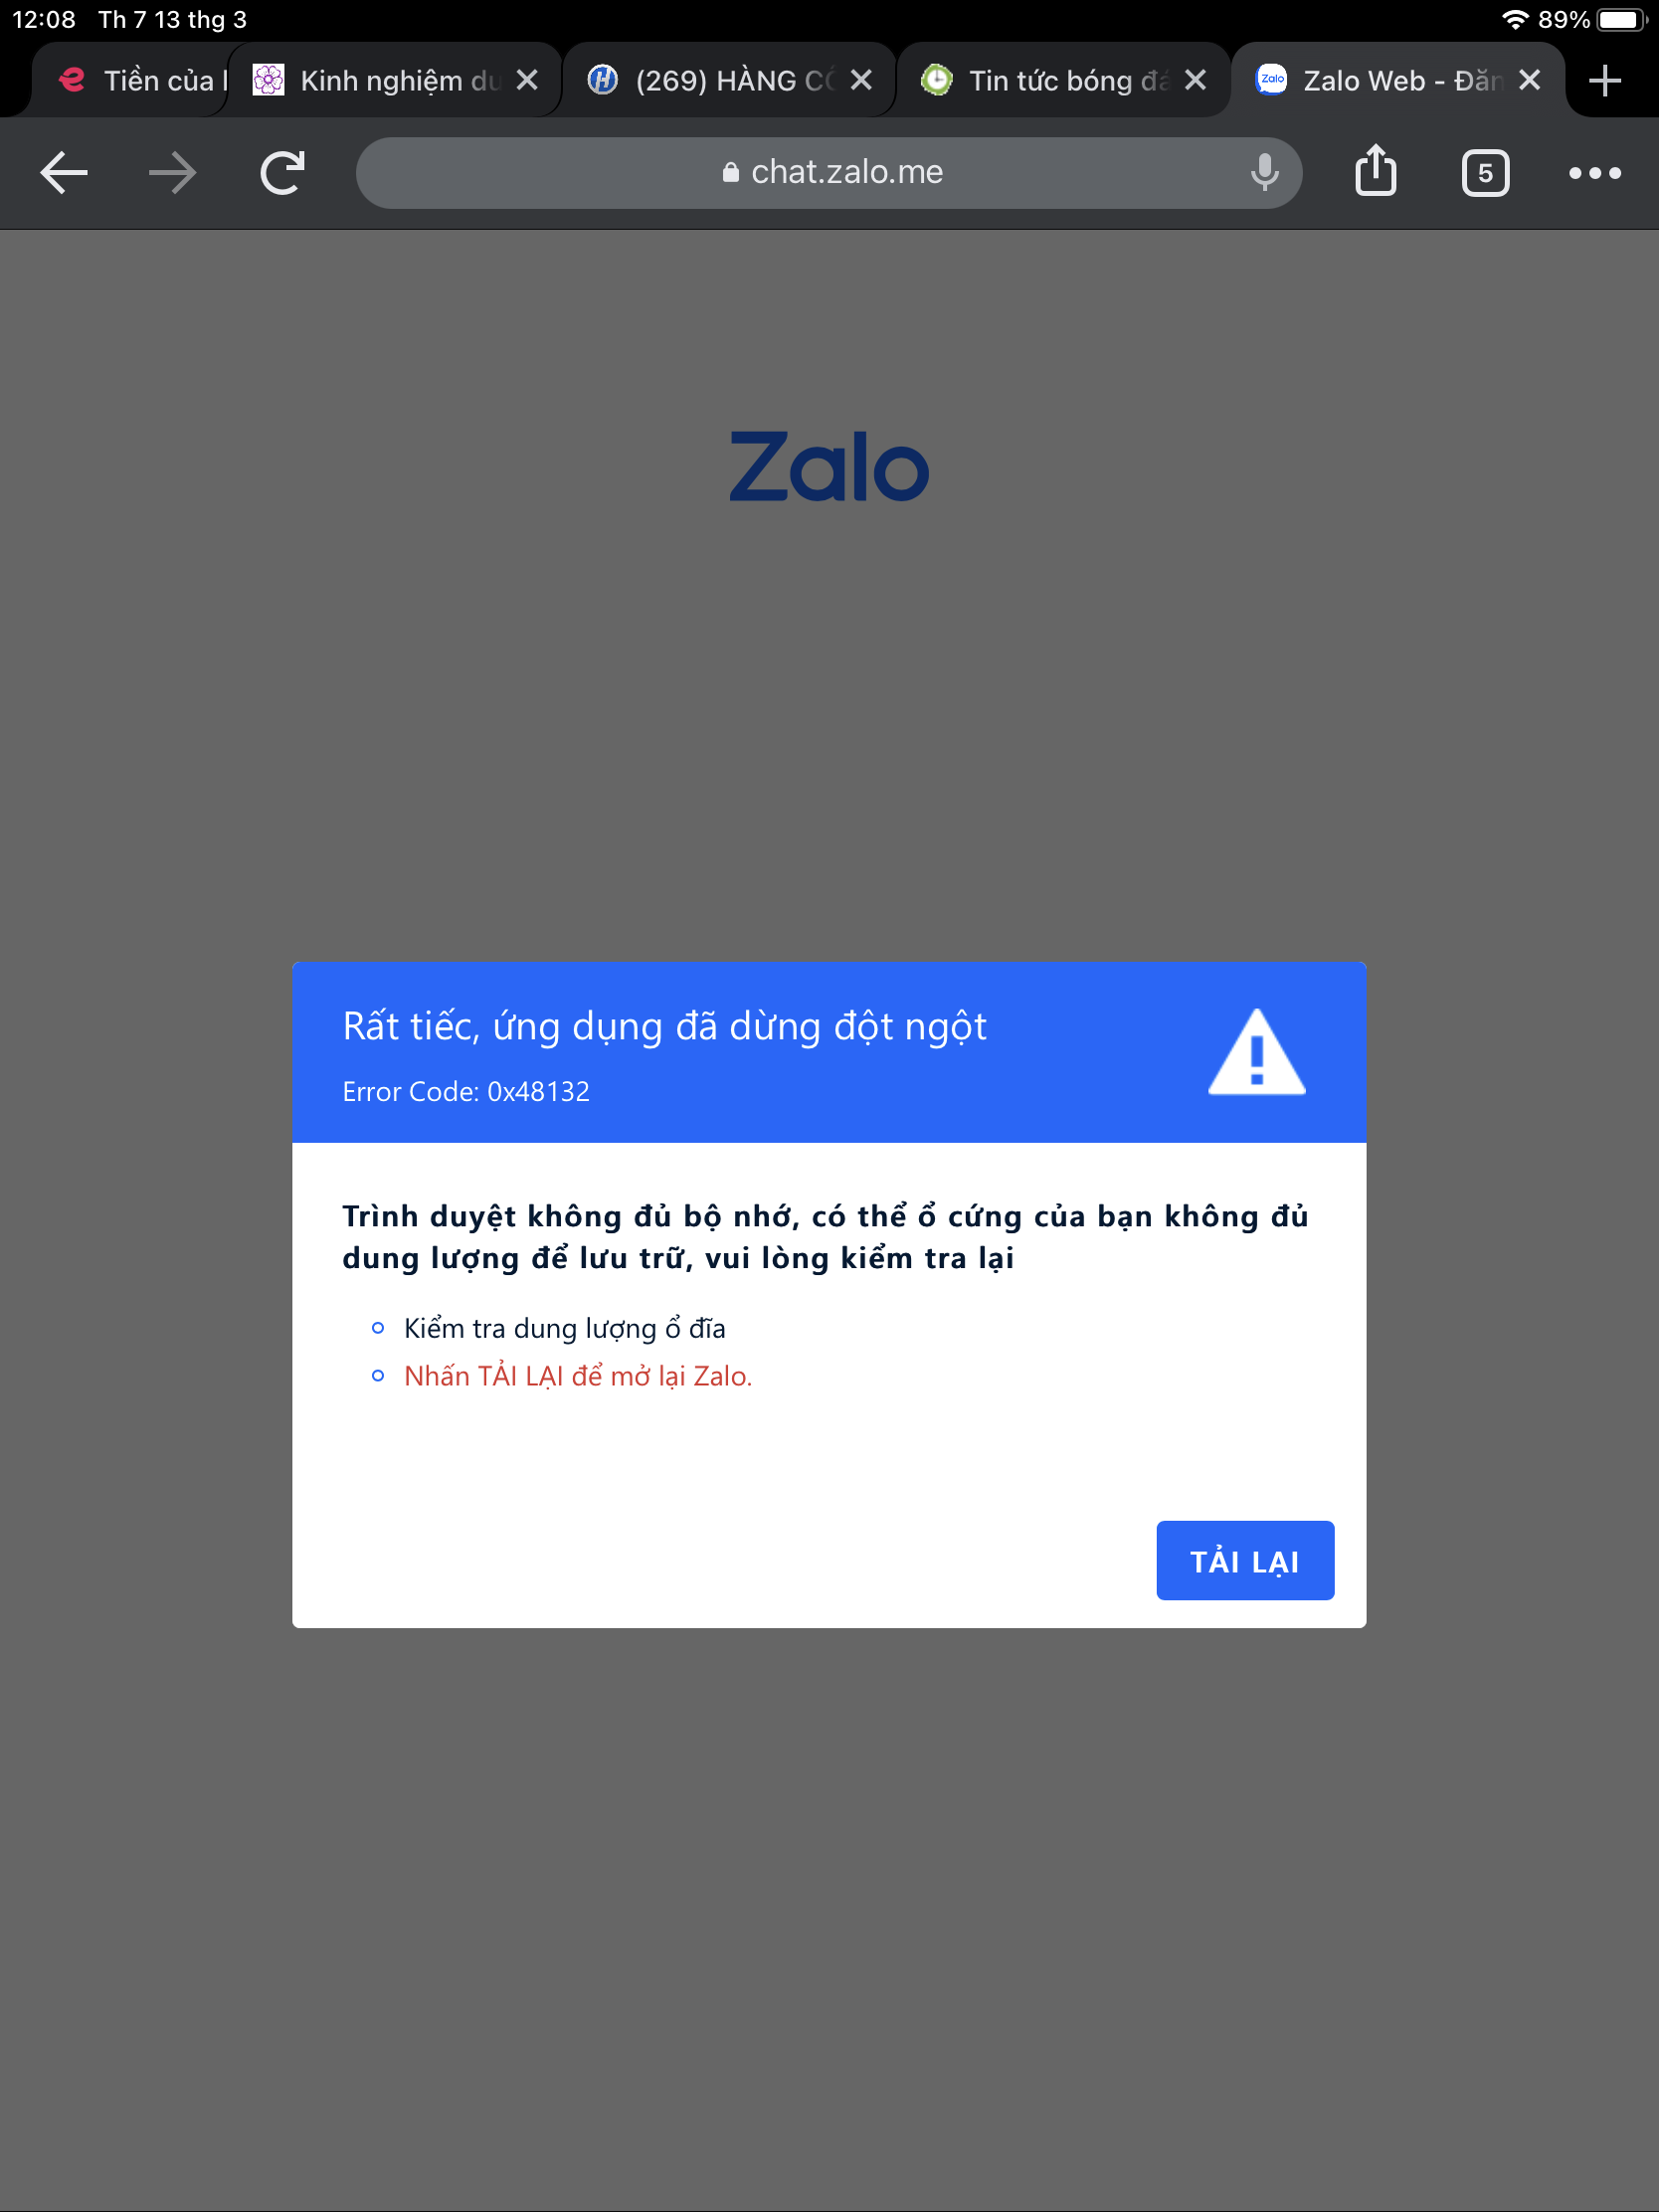 Zalo web liên tục báo lỗi khi mở trên Chrome